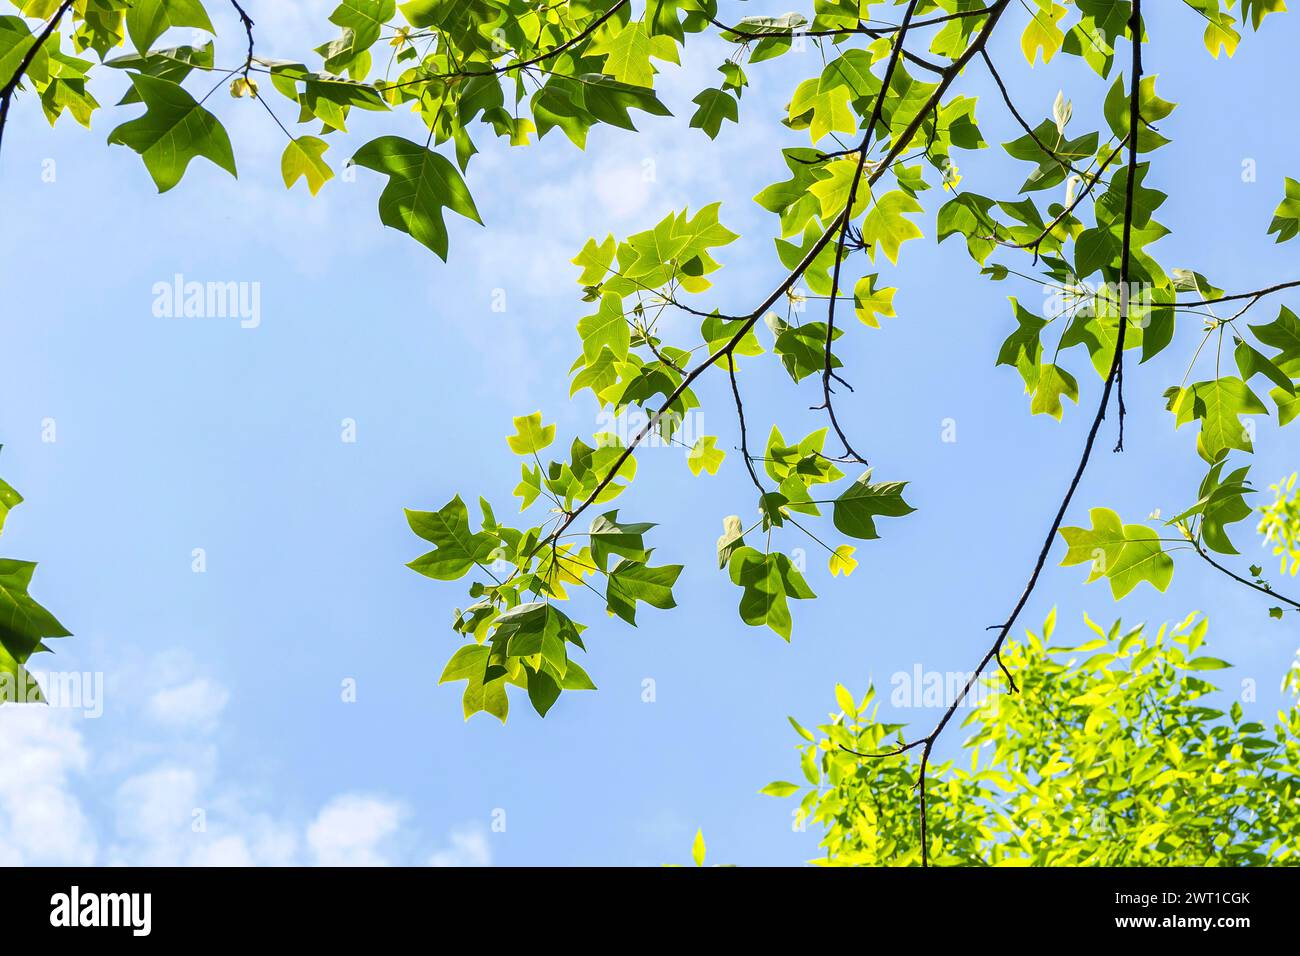 Chinesische Tulpenpappel, chinesischer Tulpenbaum, chinesisches Weißholz (Liriodendron chinensis, Liriodendron chinense), Äste gegen einen blauen Himmel, Europa, Bund Stockfoto